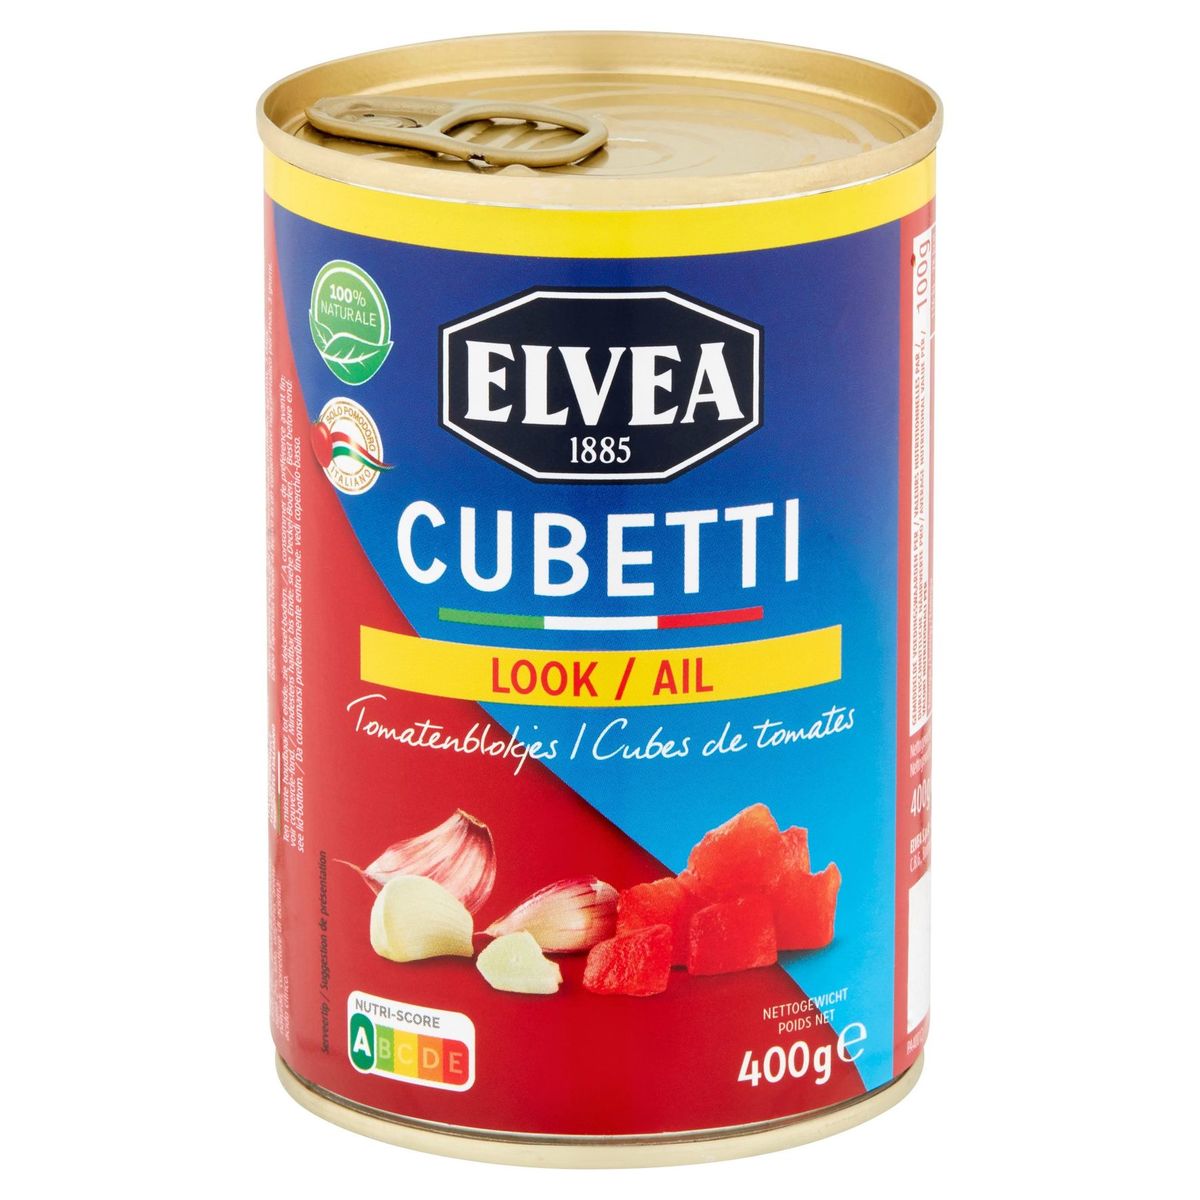 Elvea Cubetti Look Tomatenblokjes 400 g